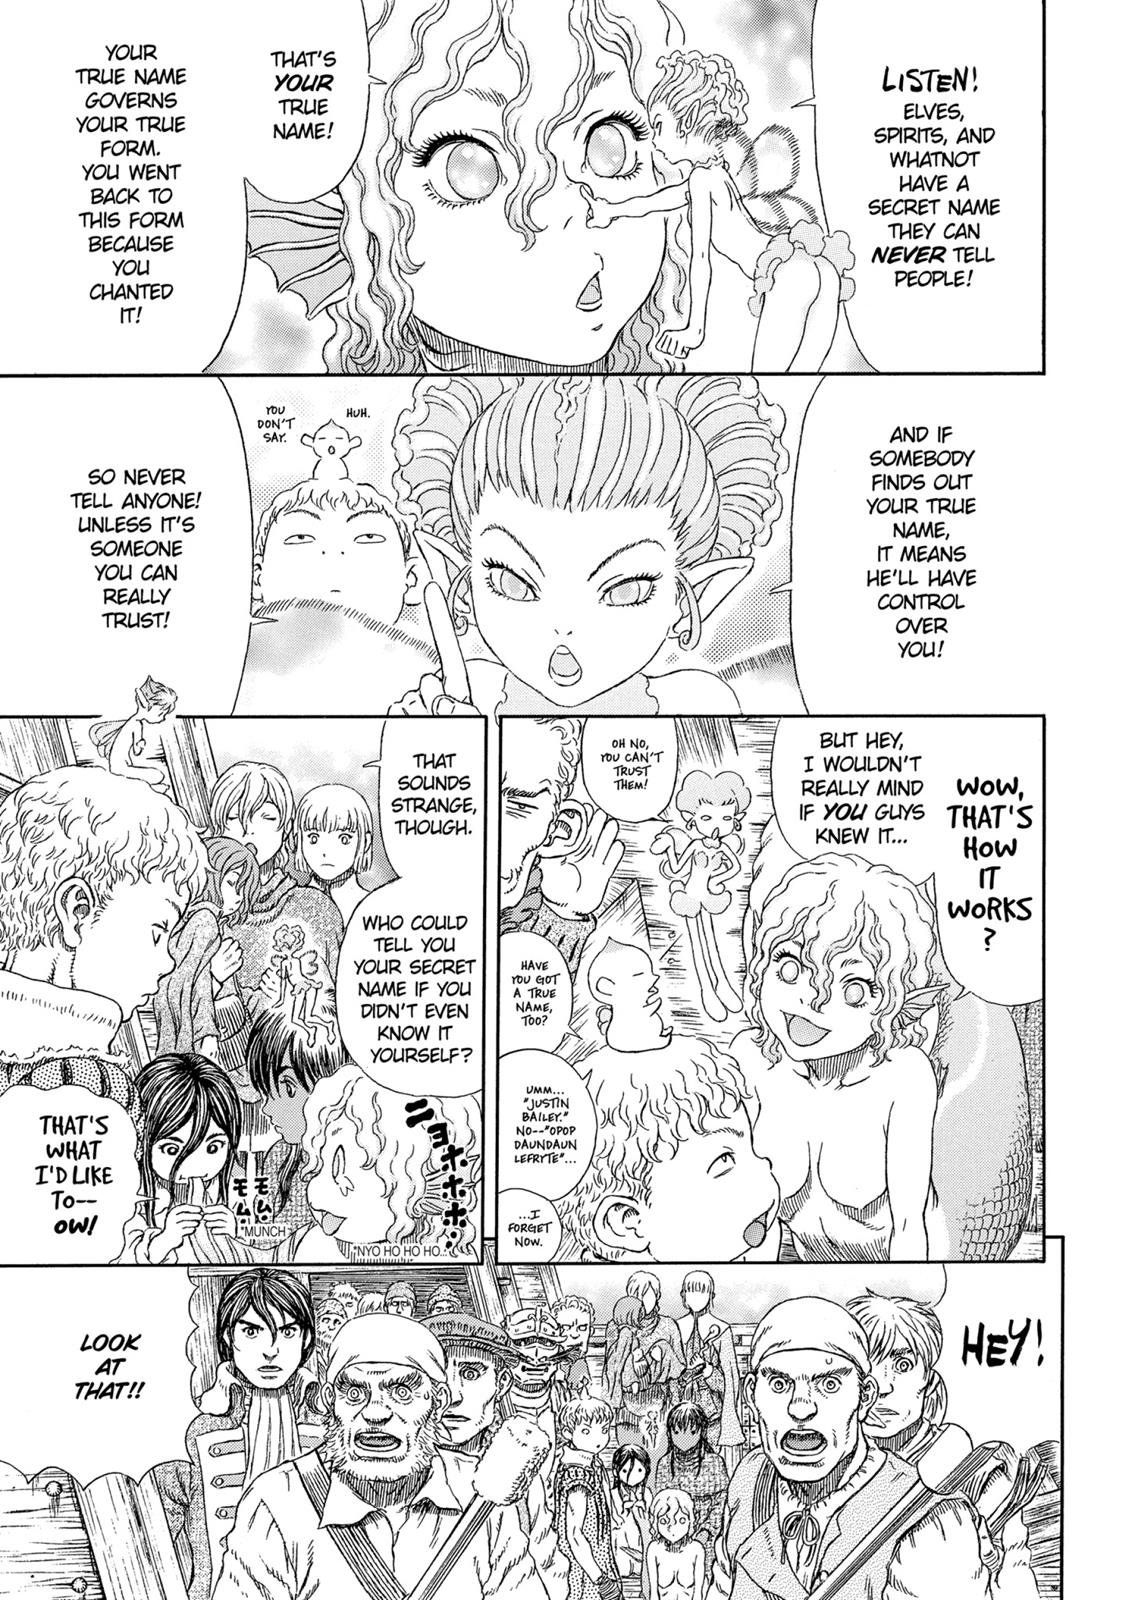 Berserk Manga Chapter 324 image 08